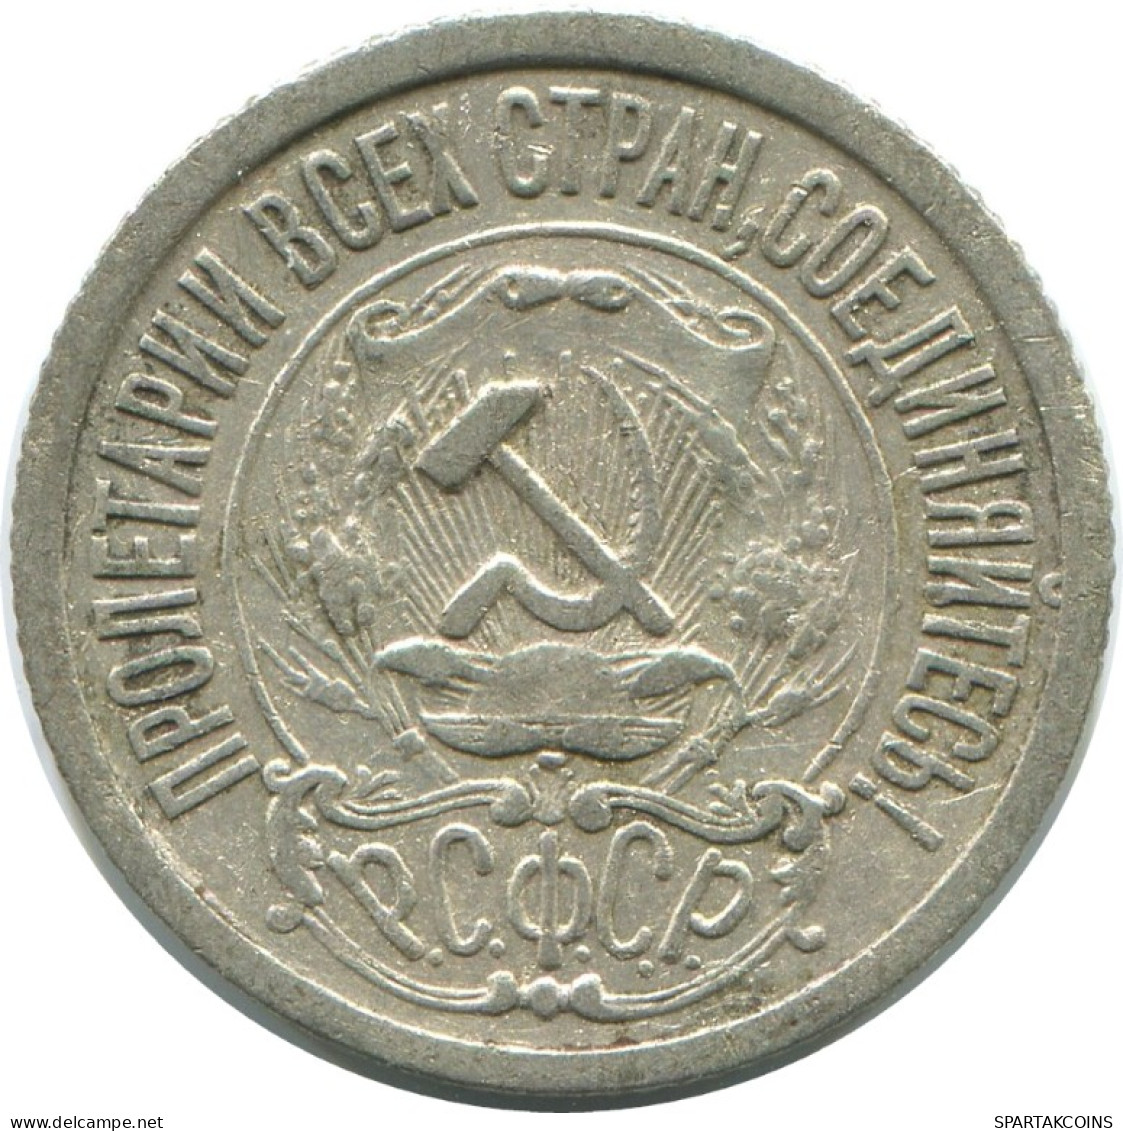 15 KOPEKS 1922 RUSSLAND RUSSIA RSFSR SILBER Münze HIGH GRADE #AF197.4.D.A - Russia